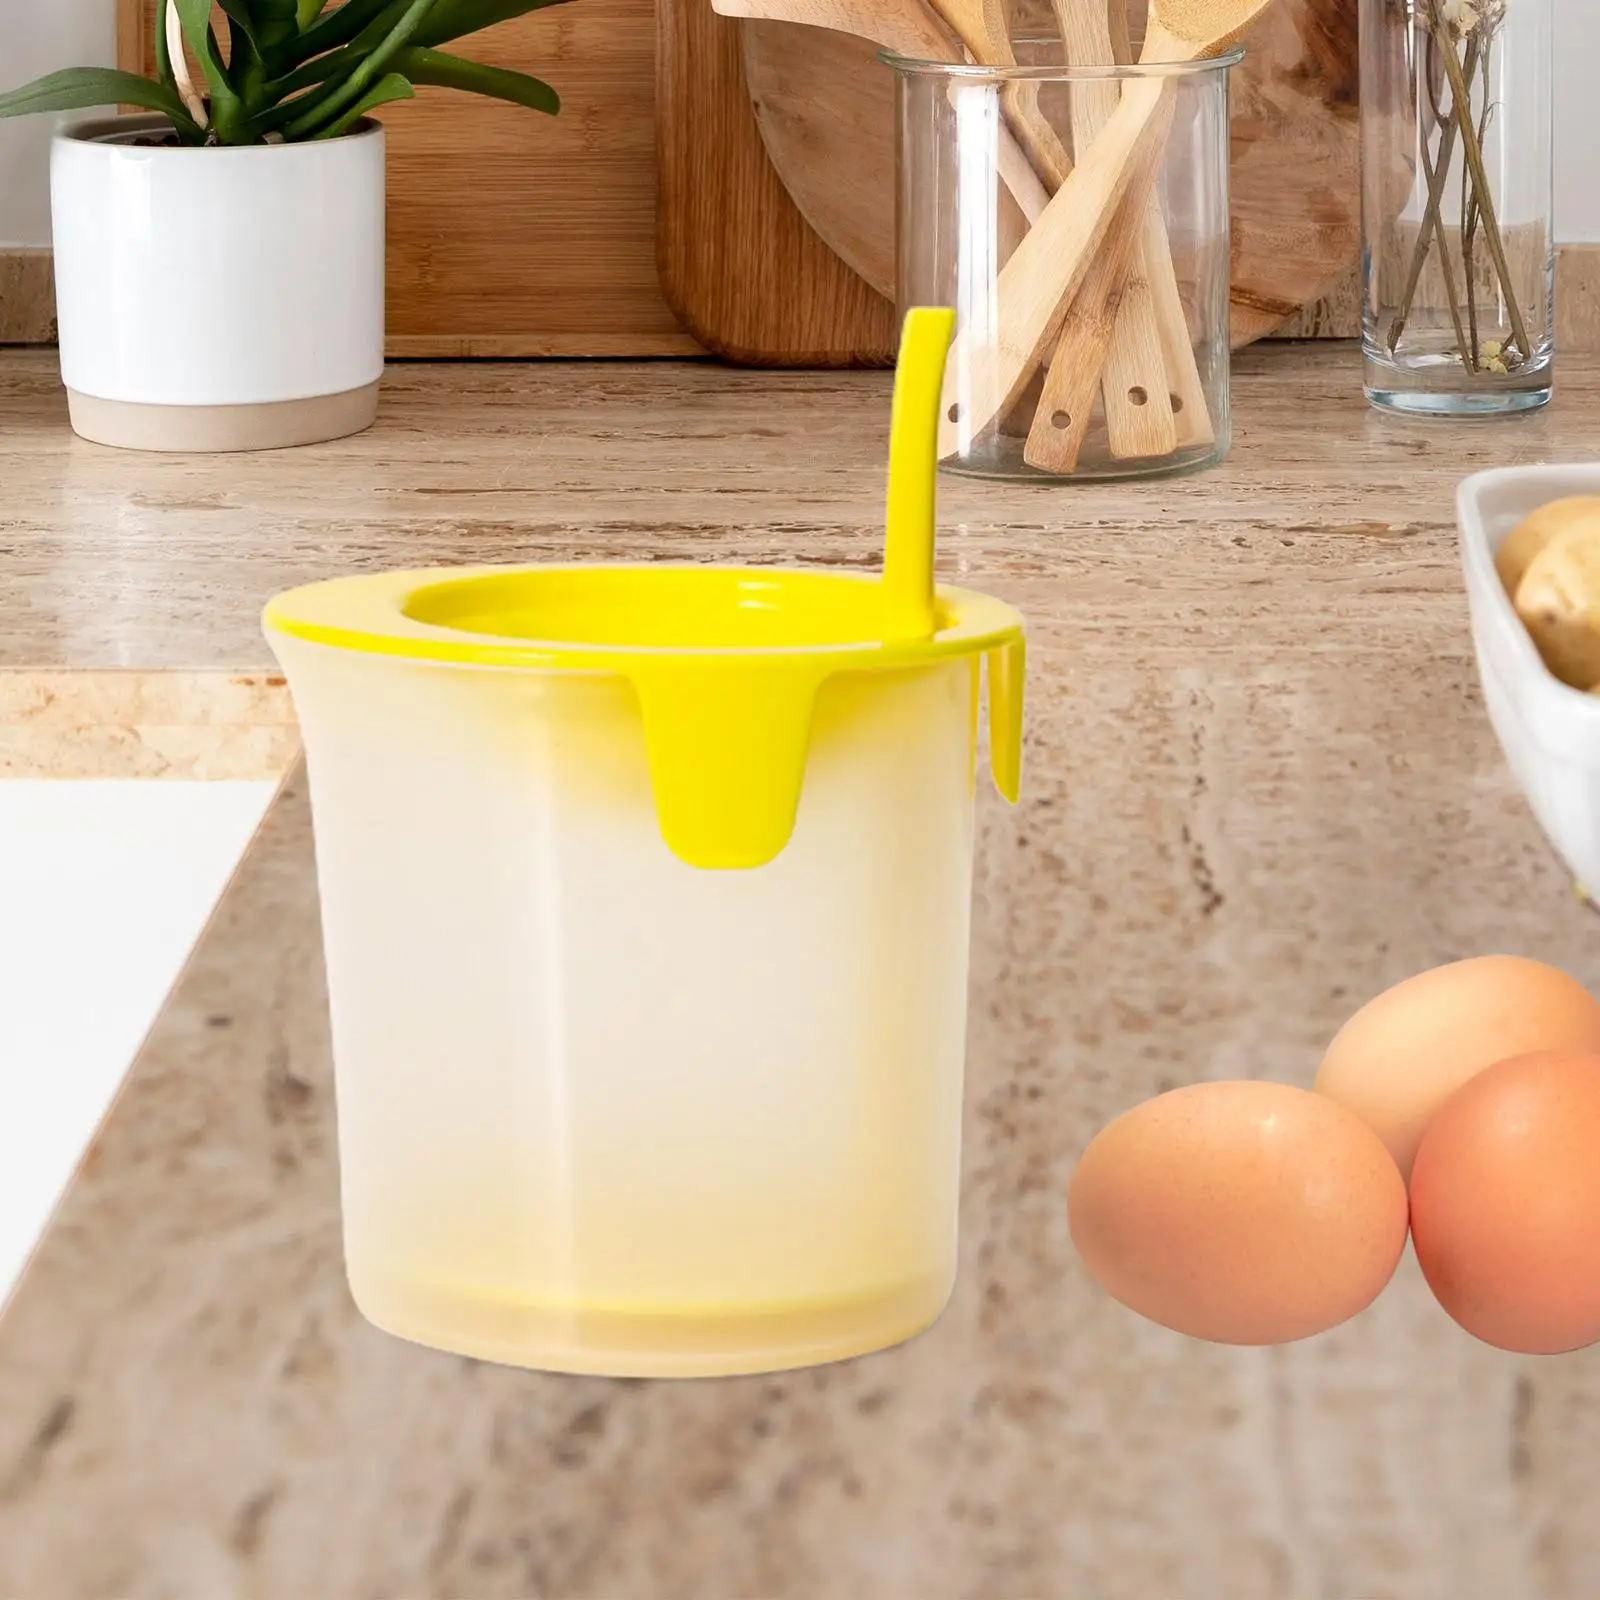 Egg Separator Cream Foame Egg White Separation Egg Fluff y Manual Egg-Beating Household Baking Tools for Home Kitchen